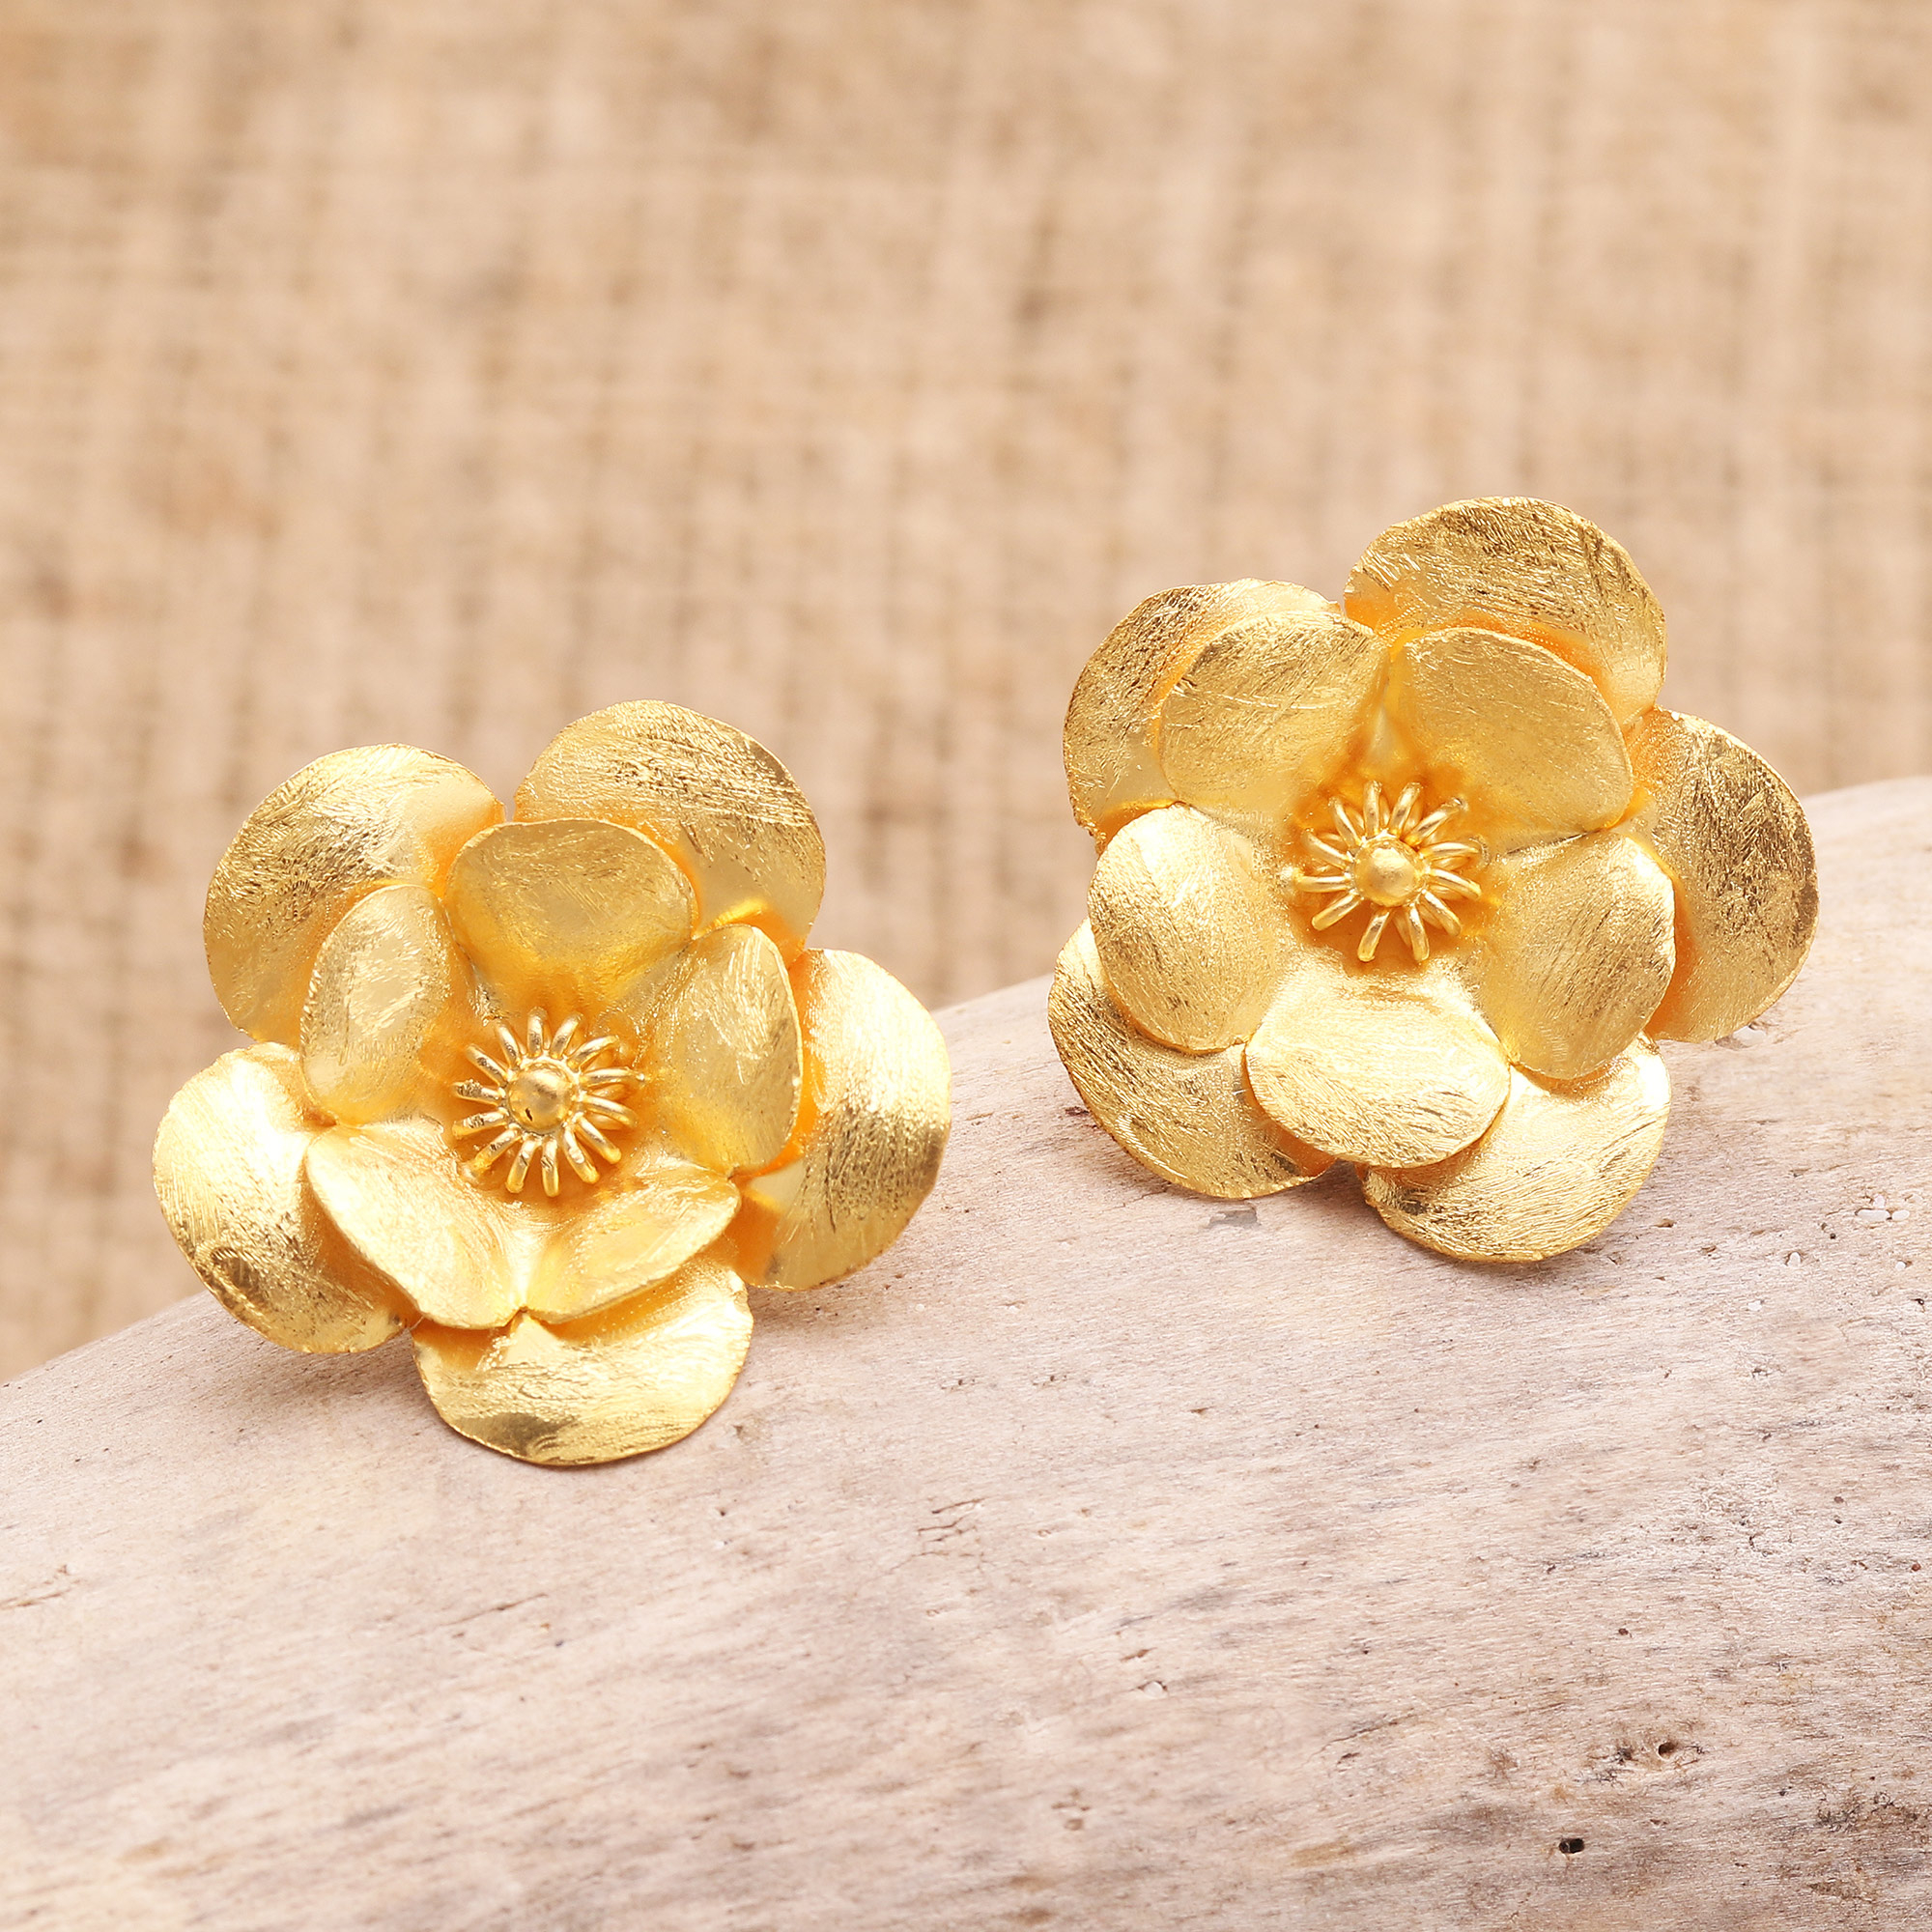 ZARA cascading NEW KATE MIDDLETON floral earrings flower gold BAFTAS  4736/08/303 | eBay